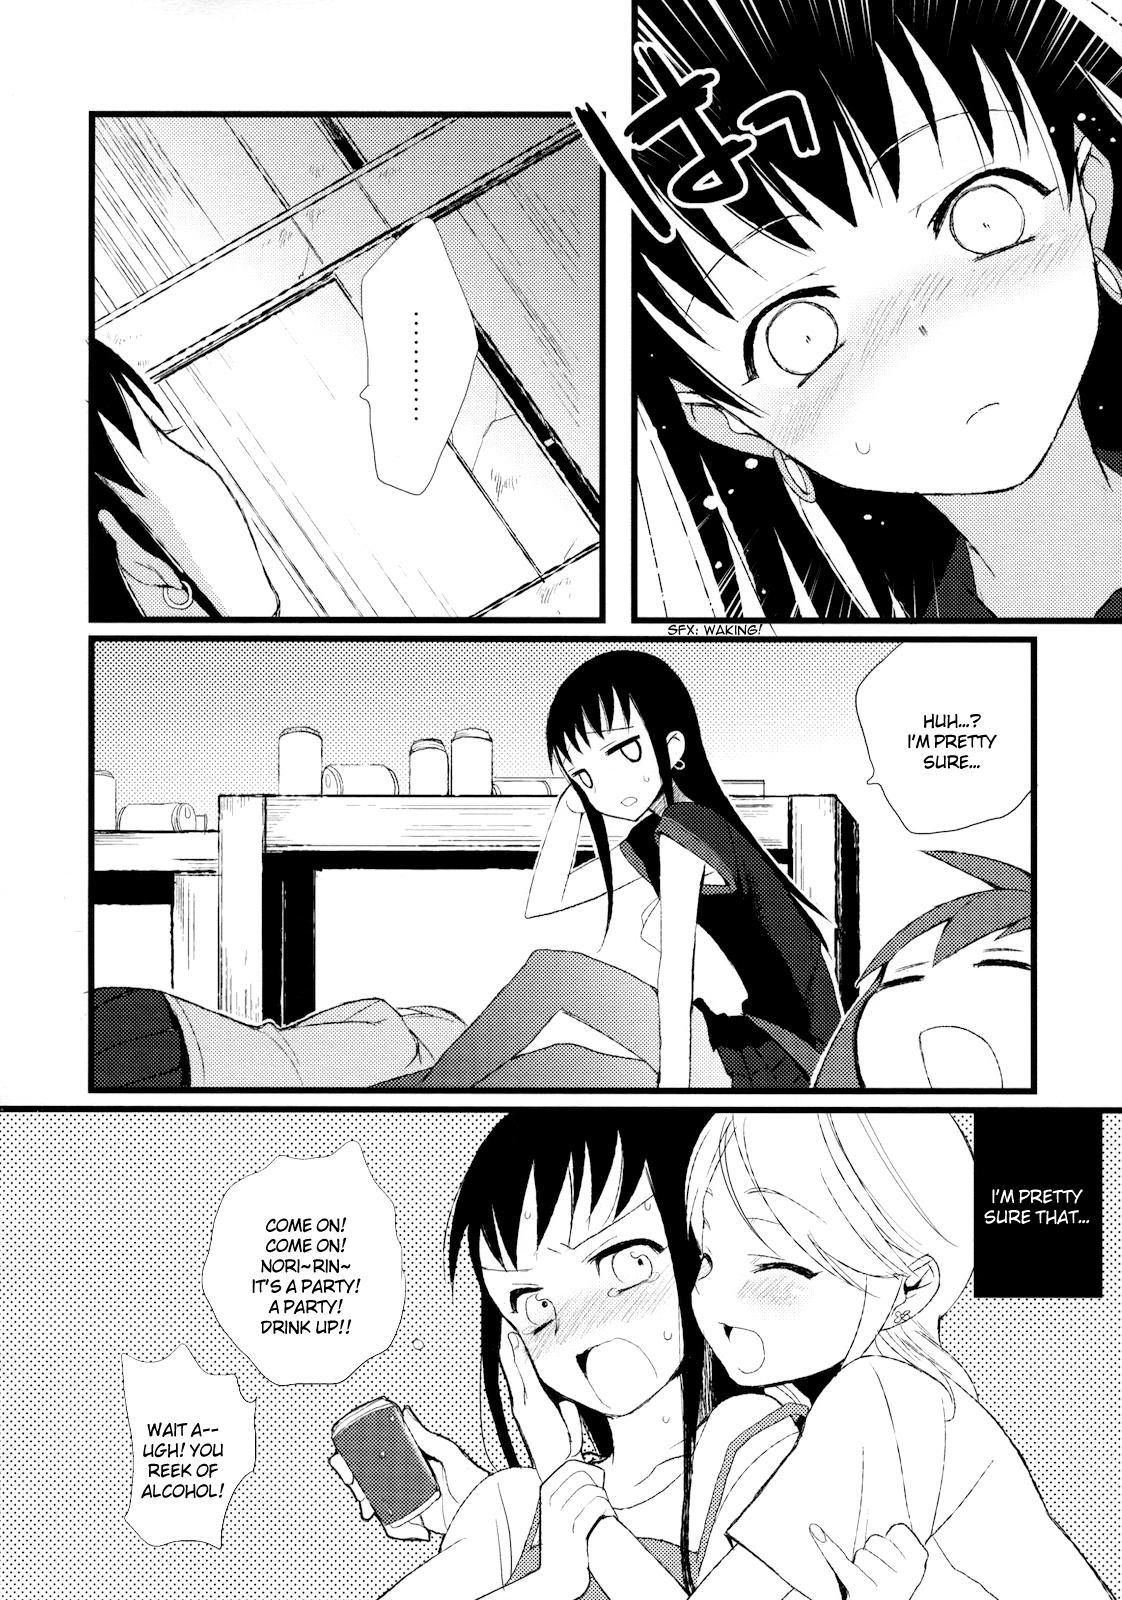 Petite Porn Taru Yume 5 - Narutaru Mamando - Page 5